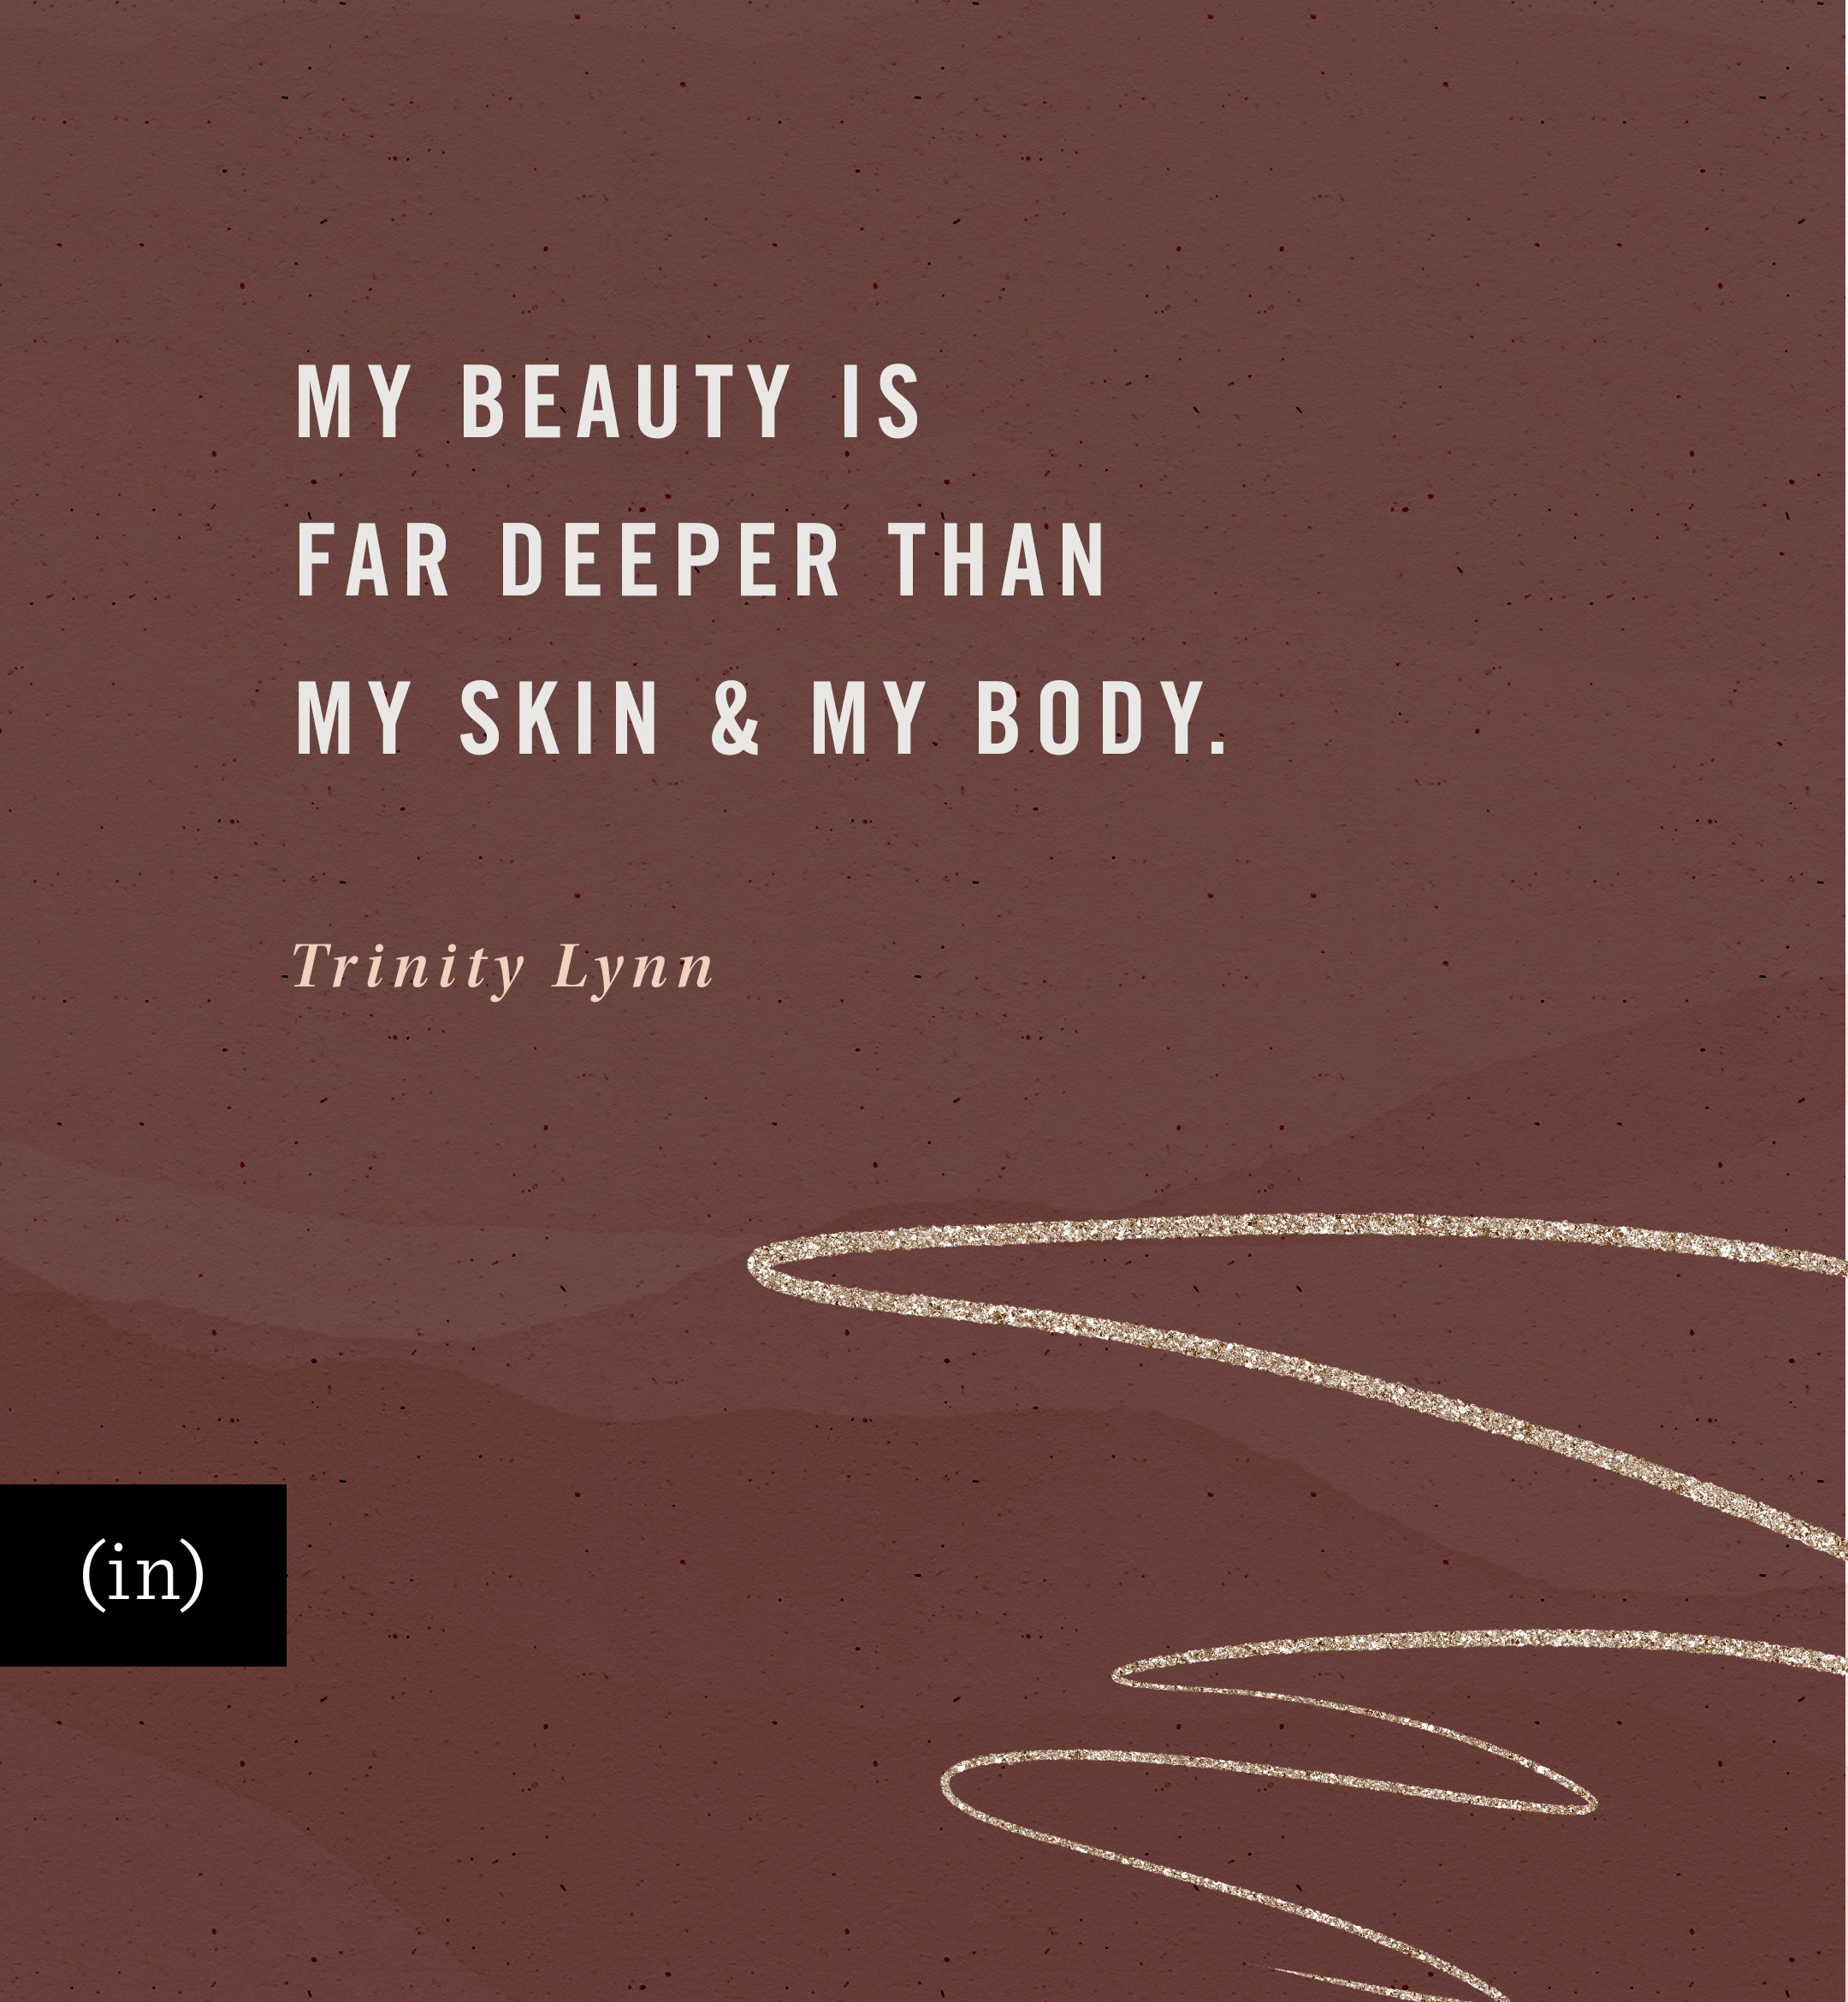 My beauty is far deeper than my skin and my body. -Trinity Lynn